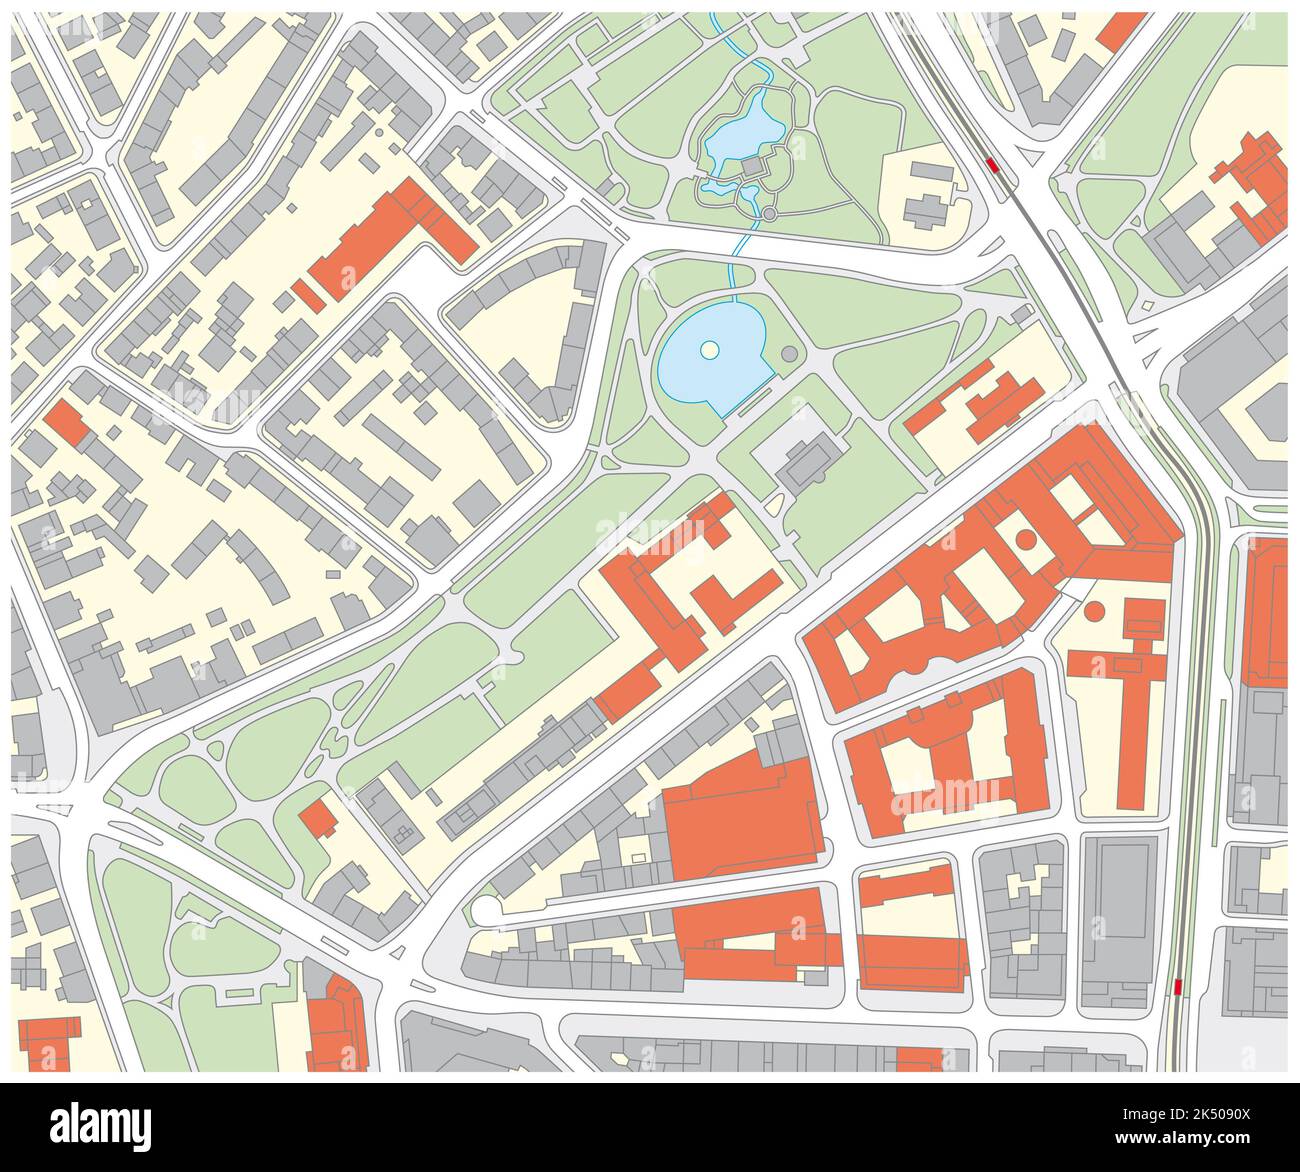 Mapa catastral imaginaria de un área con edificios y calles Foto de stock